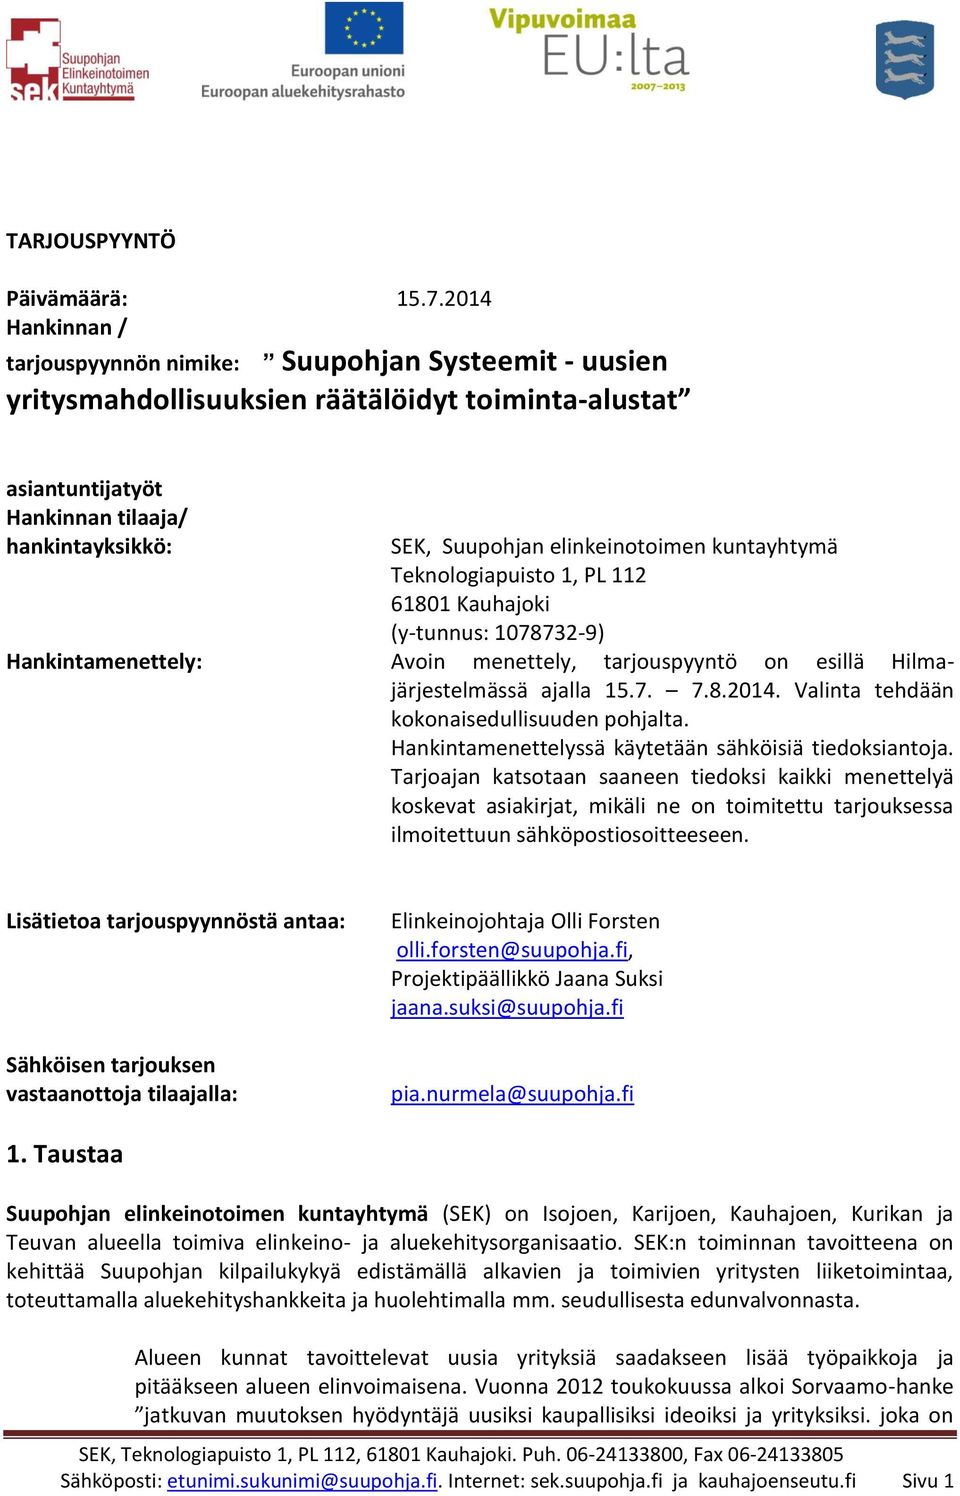 elinkeinotoimen kuntayhtymä Teknologiapuisto 1, PL 112 61801 Kauhajoki (y-tunnus: 1078732-9) Hankintamenettely: Avoin menettely, tarjouspyyntö on esillä Hilmajärjestelmässä ajalla 15.7. 7.8.2014.